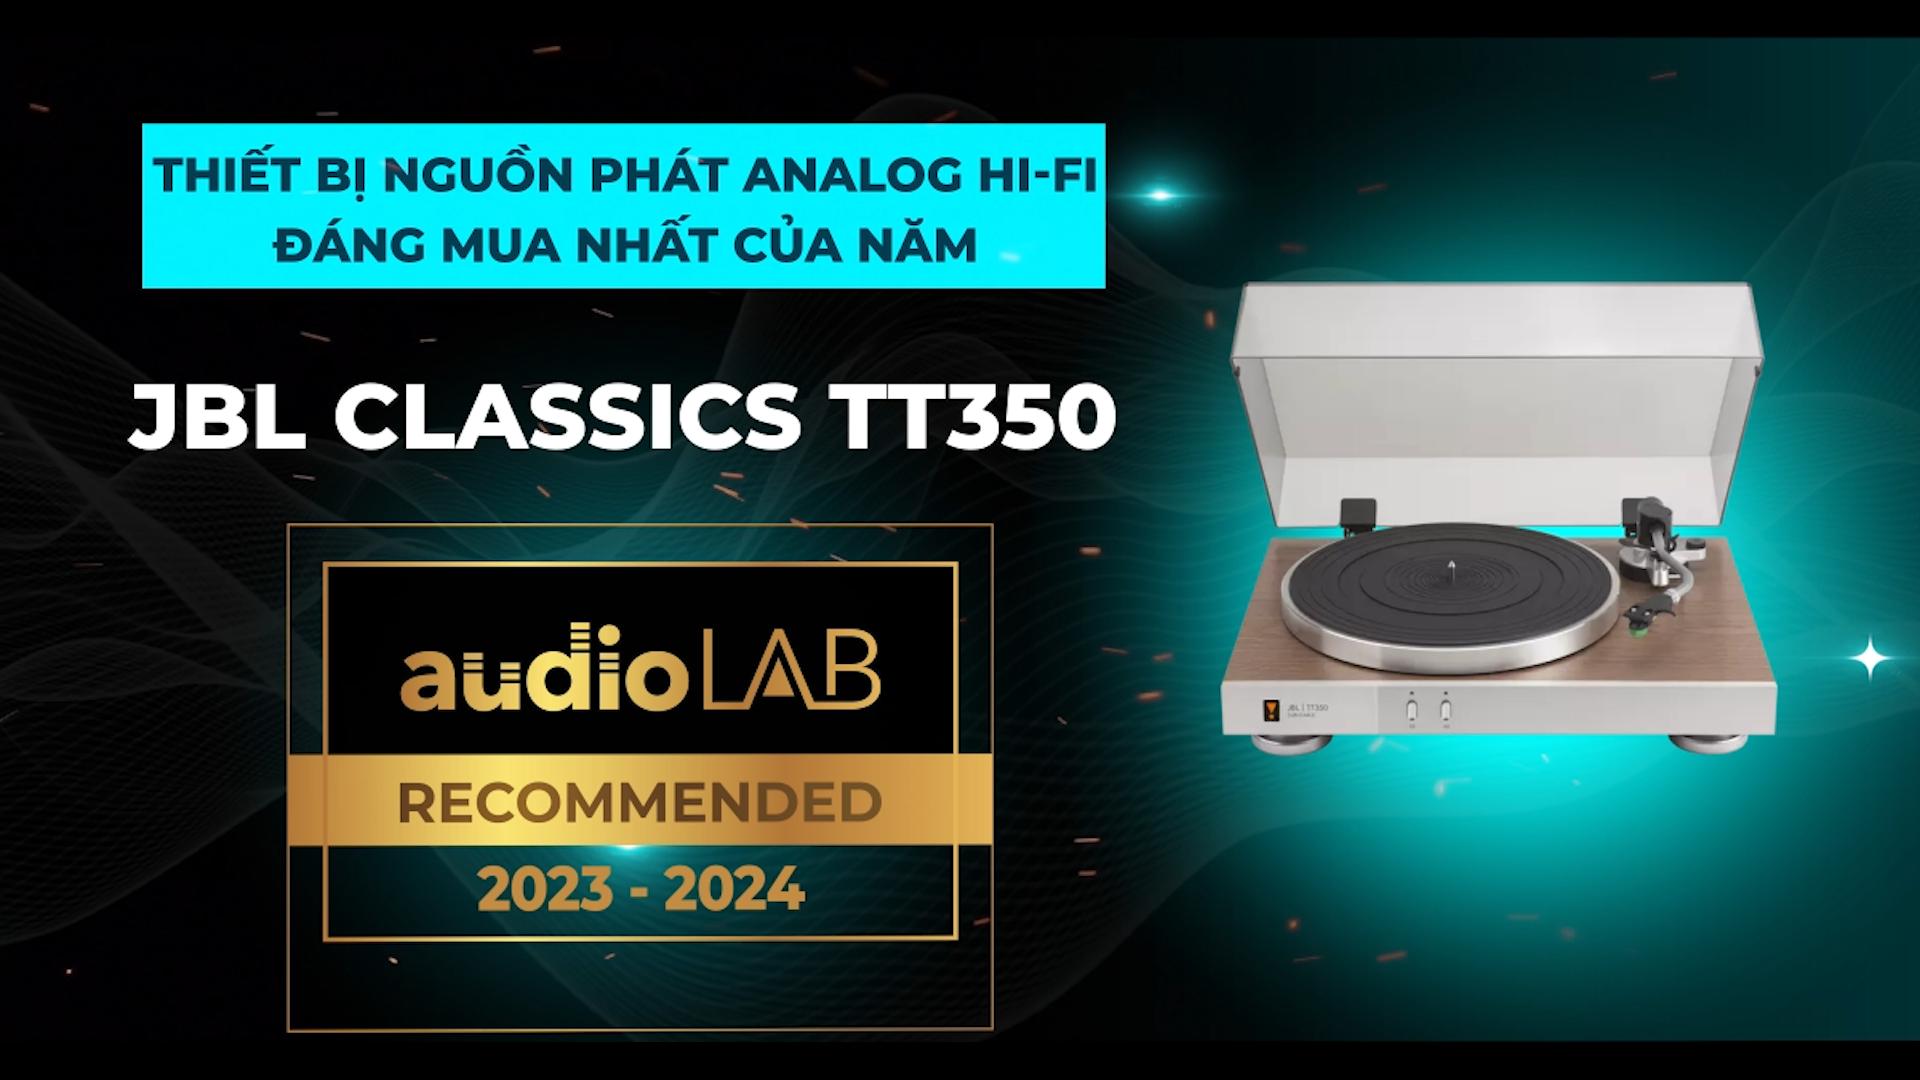 [Audio LAB Recommended] JBL TT350 Classic - Thiết bị nguồn phát Analog Hi-Fi đáng mua nhất năm 2023-2024